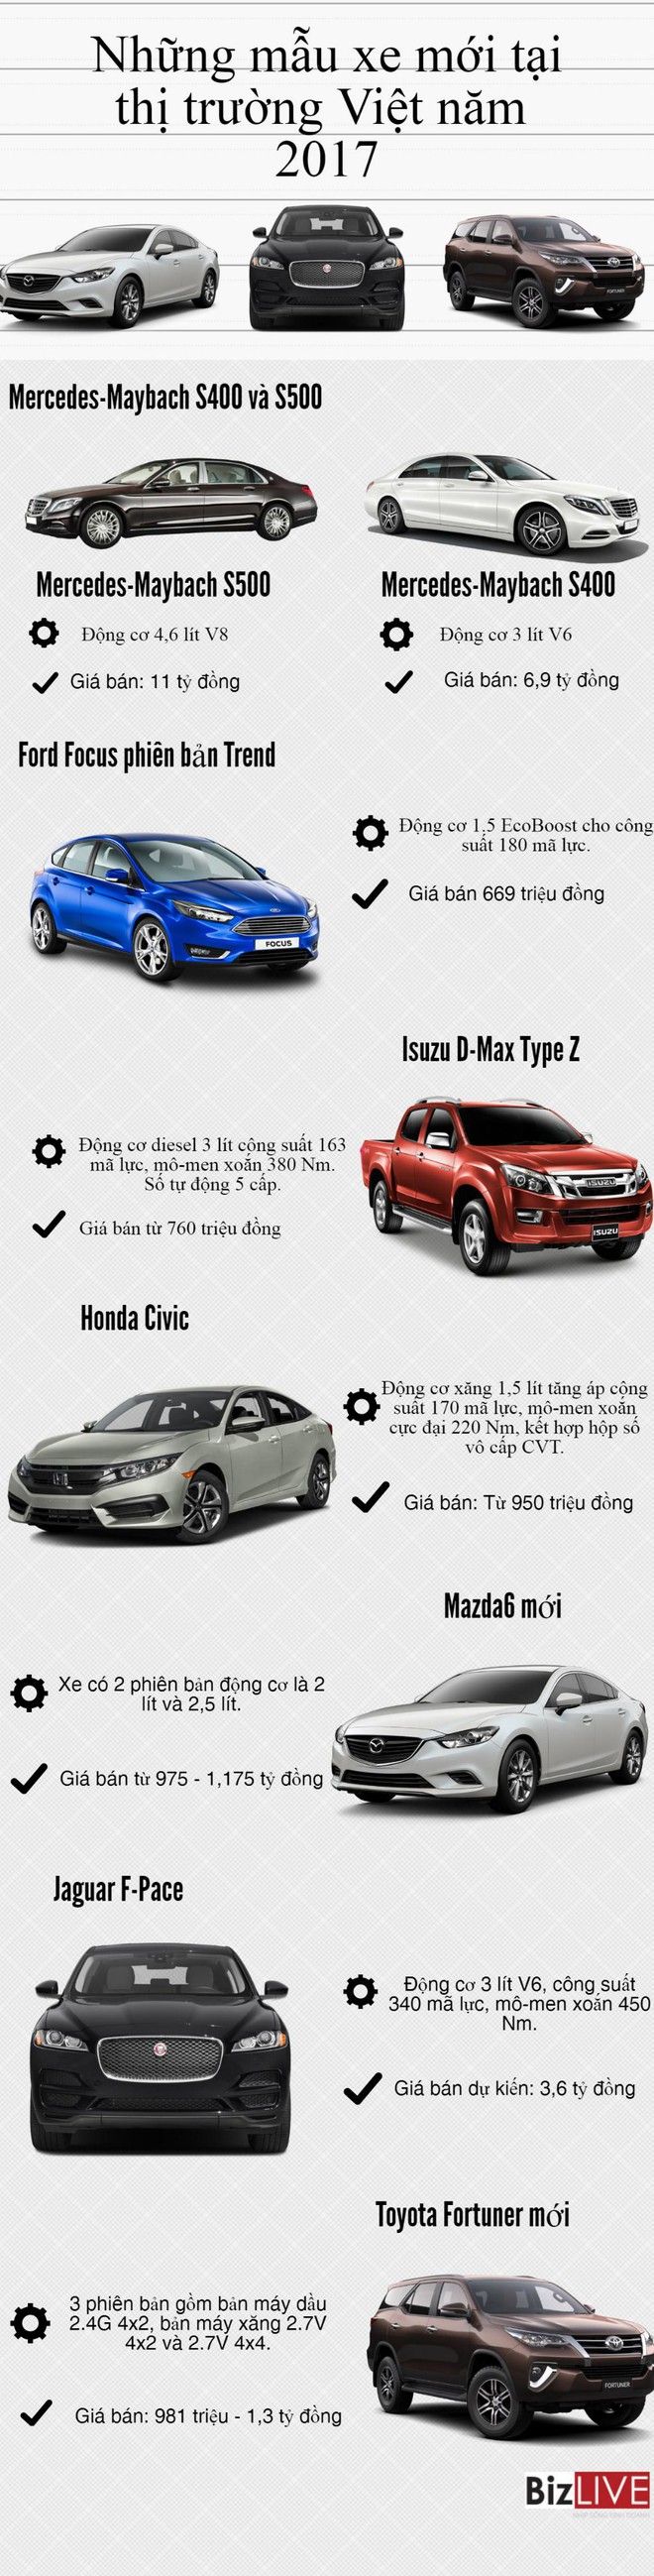 [Infographic] Những mẫu xe ô tô mới tại thị trường Việt năm 2017 - Ảnh 1.